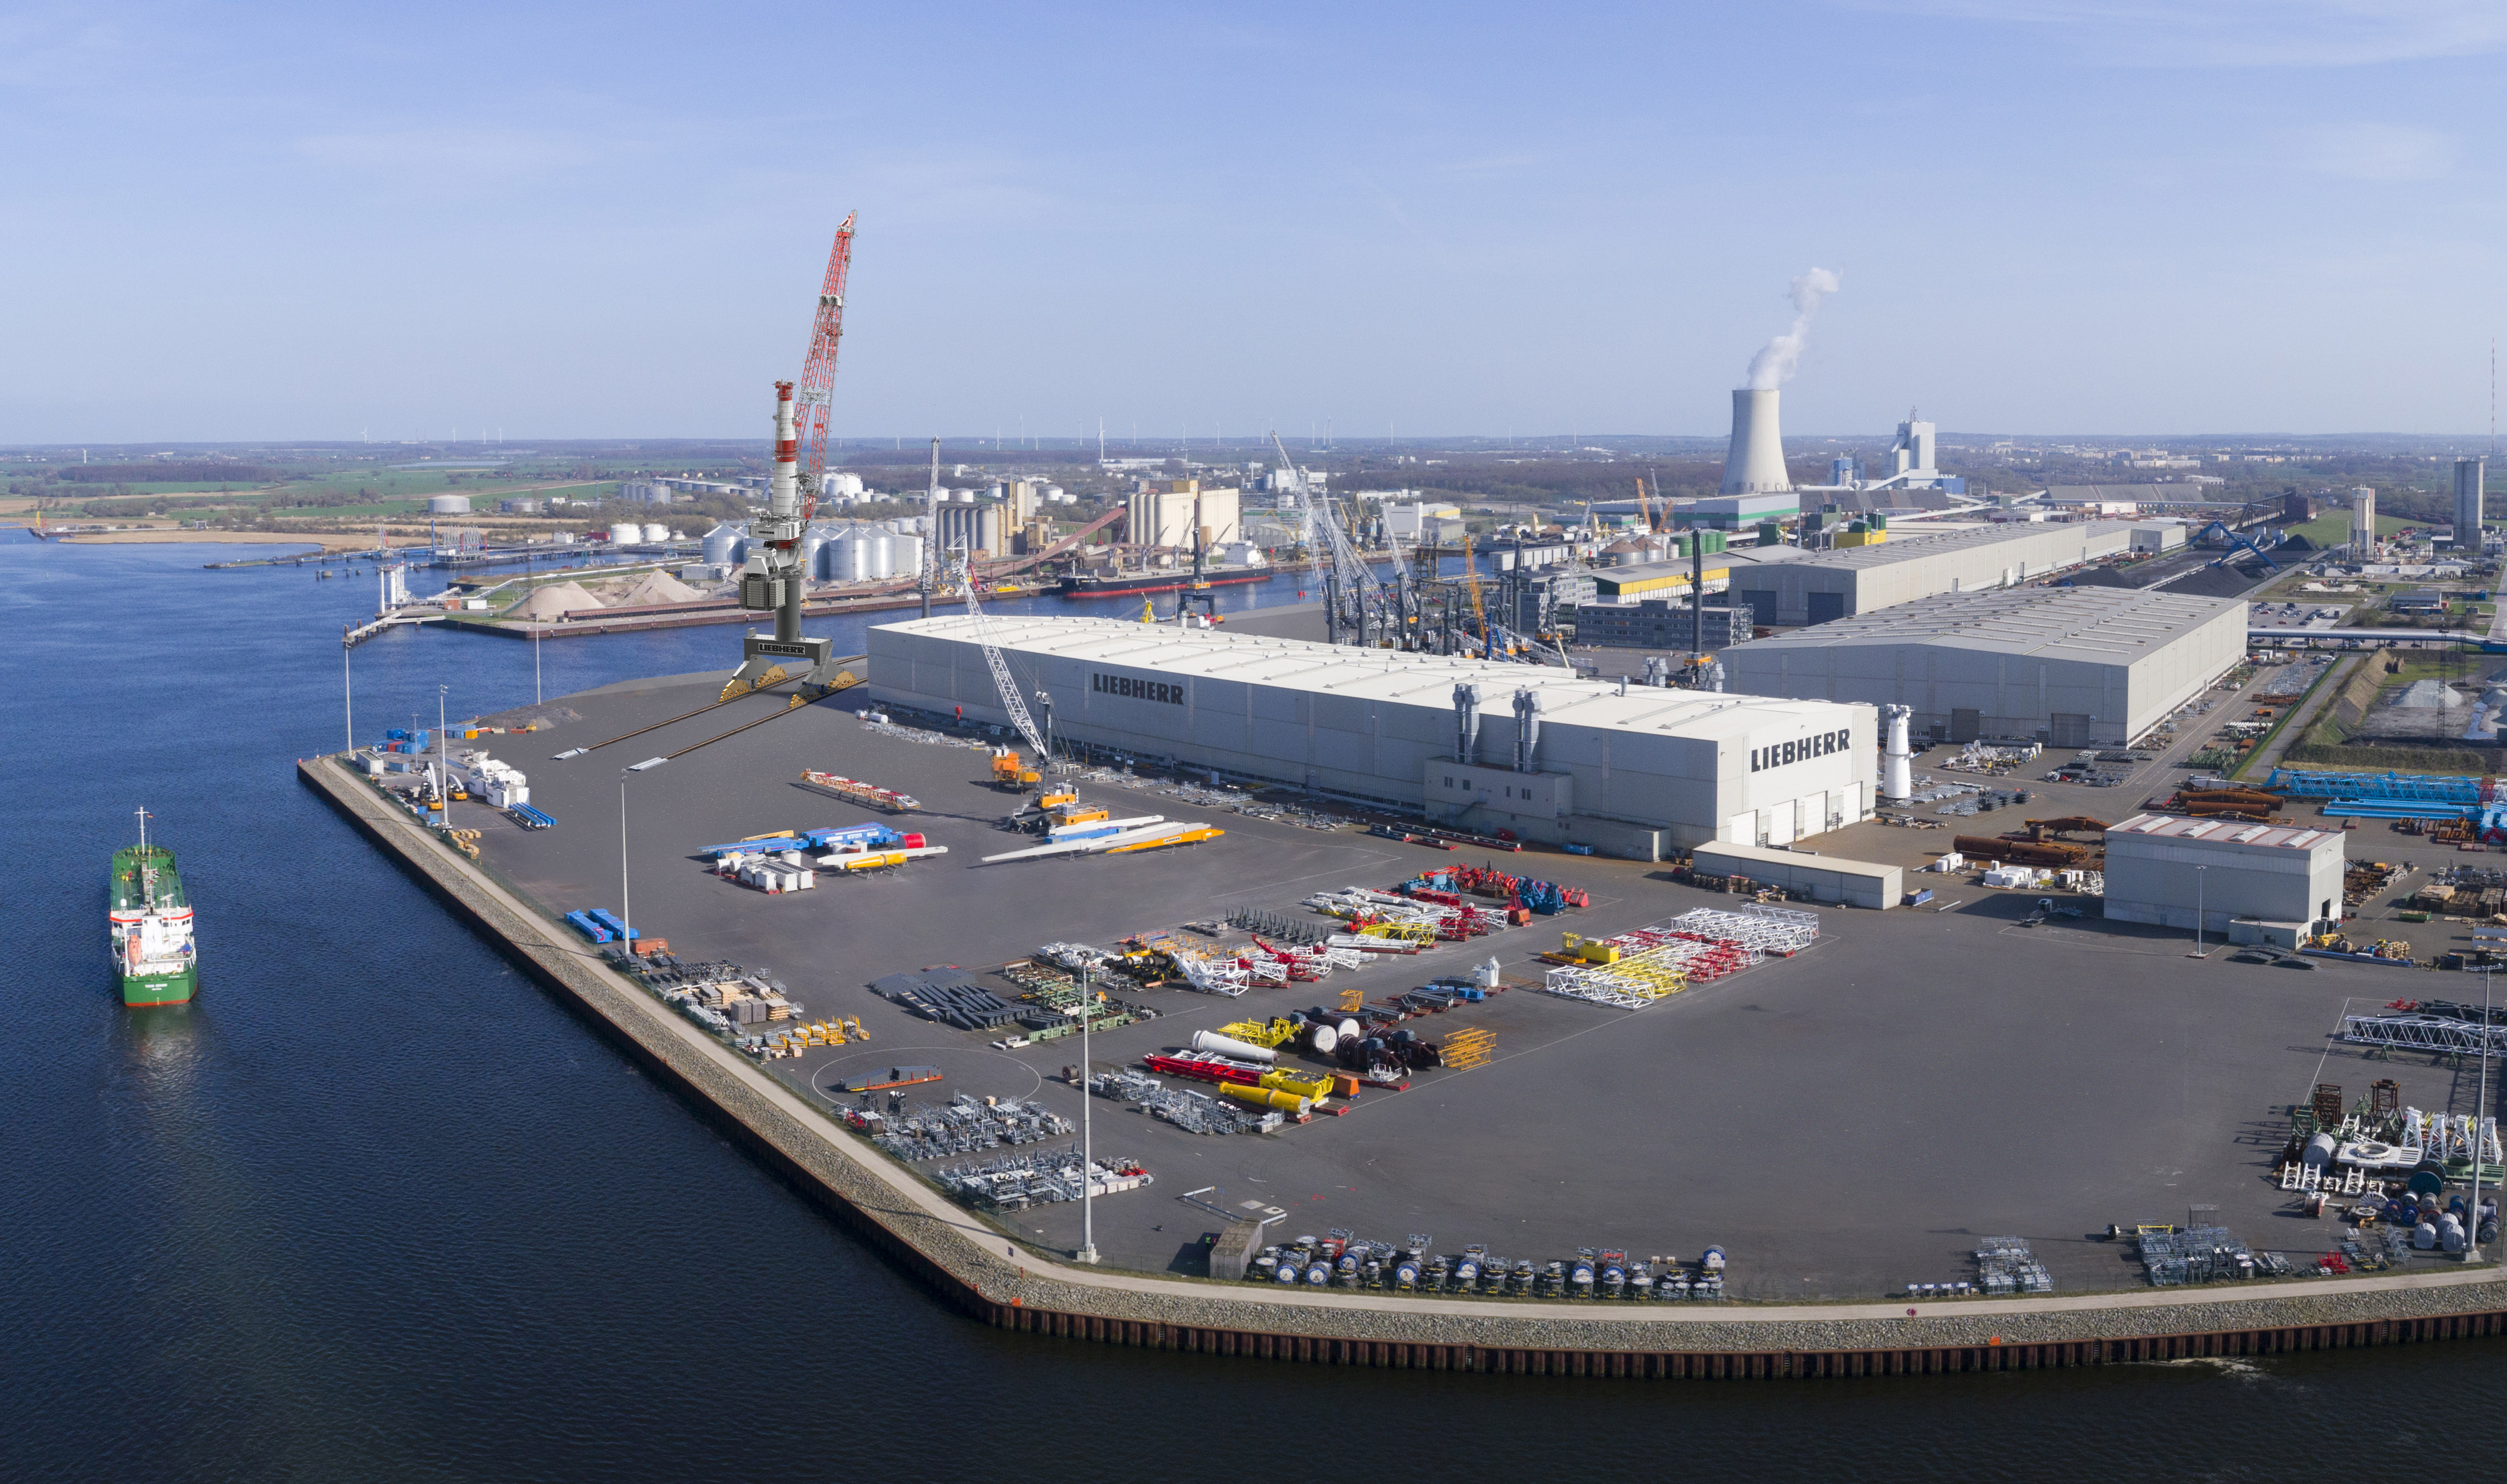 Hafen Rostock bekommt Liebherr Schwerlastkran der Superlative